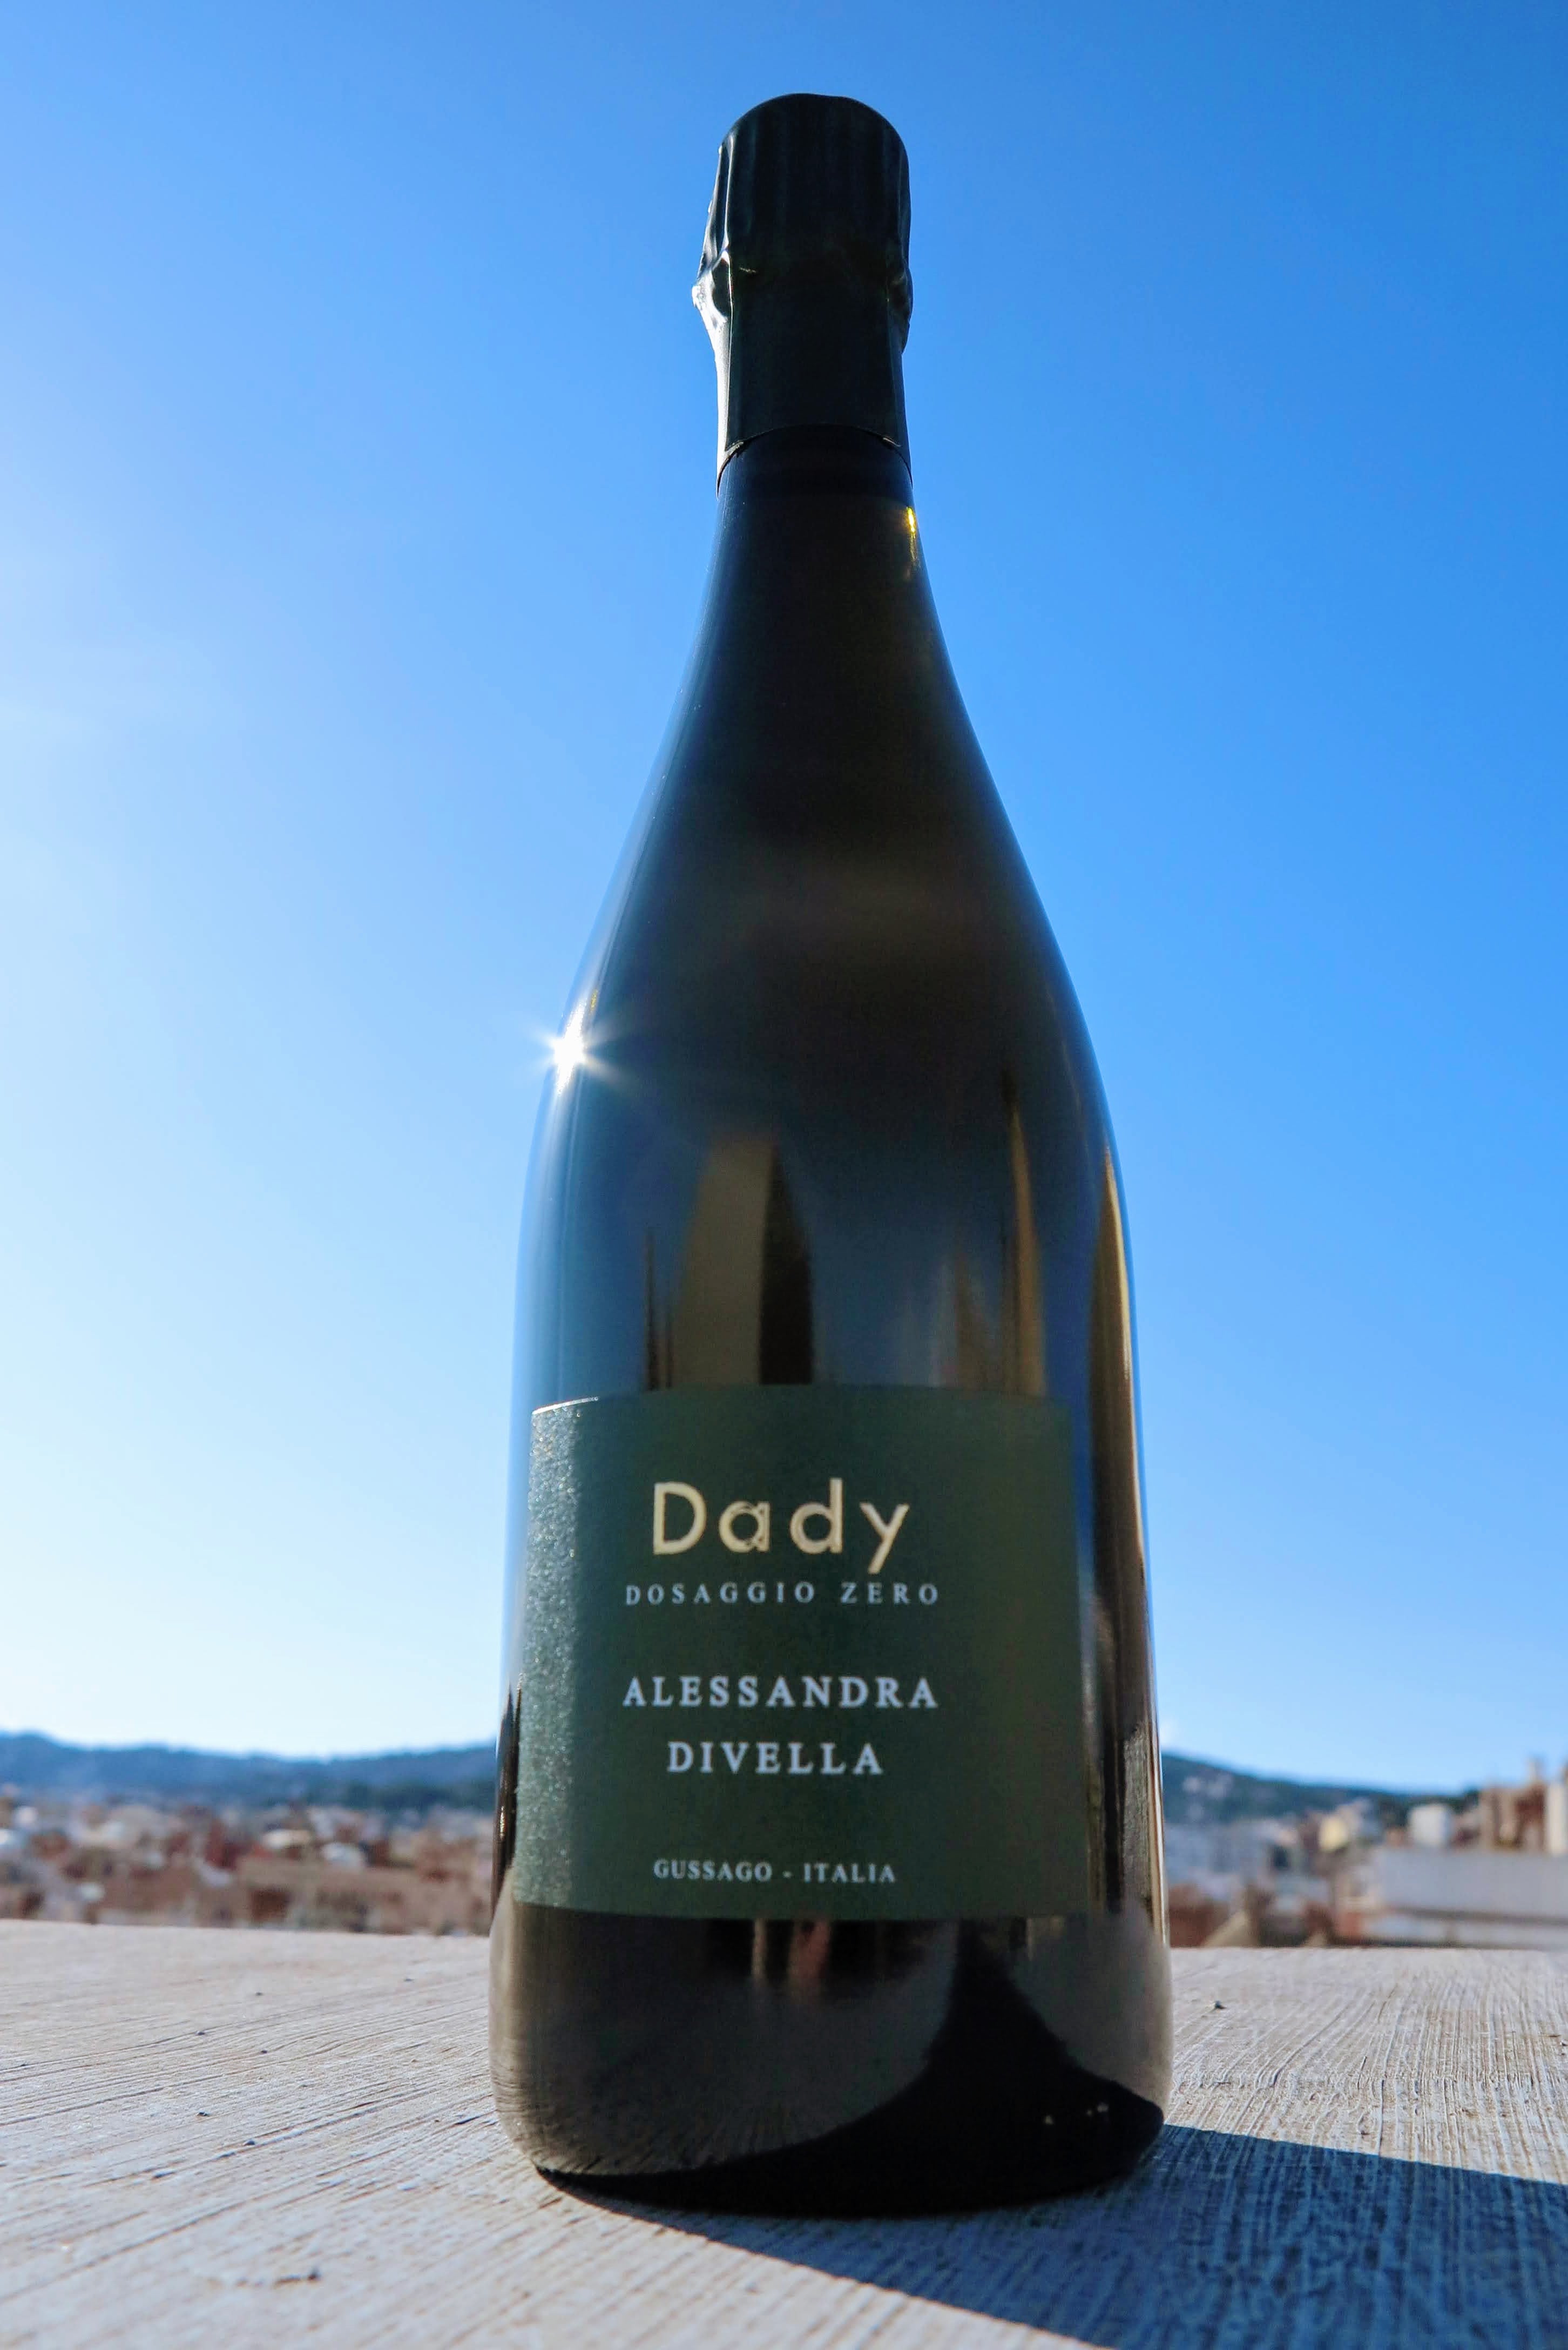 Alessandra Divella - Dady no dosificado - 100 % Chardonnay 2018